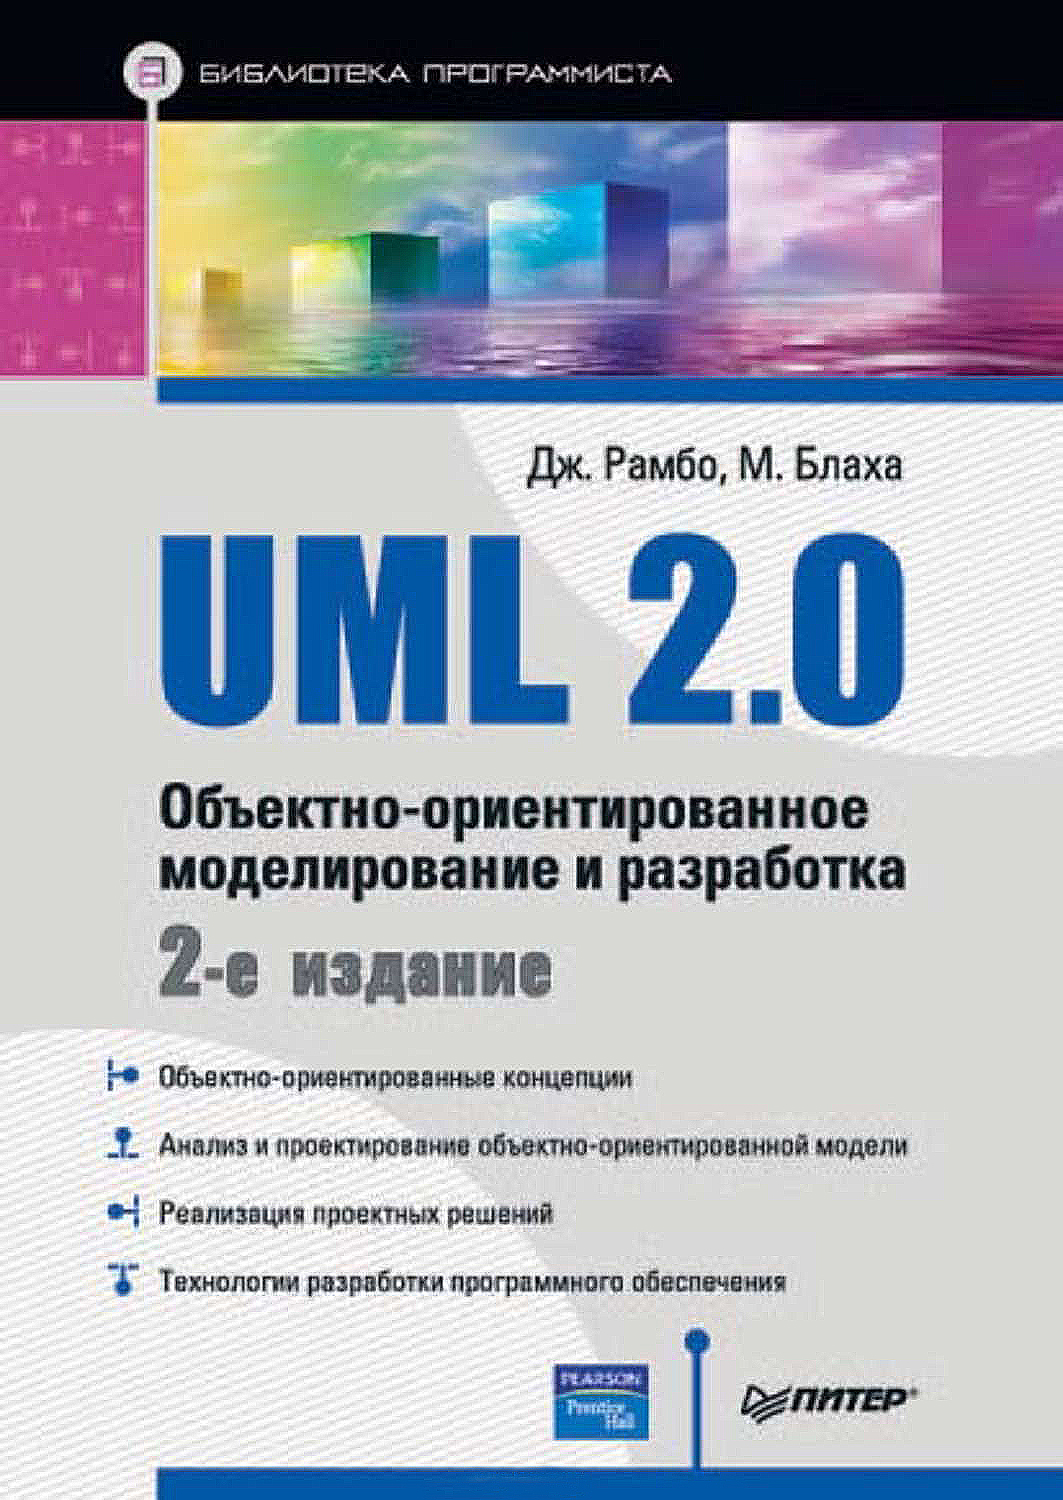 Книга Библиотека программиста (Питер) UML 2.0. Объектно-ориентированное моделирование и разработка созданная Джеймс Рамбо, М. Блаха может относится к жанру зарубежная компьютерная литература, программирование, программы. Стоимость электронной книги UML 2.0. Объектно-ориентированное моделирование и разработка с идентификатором 11814149 составляет 99.00 руб.